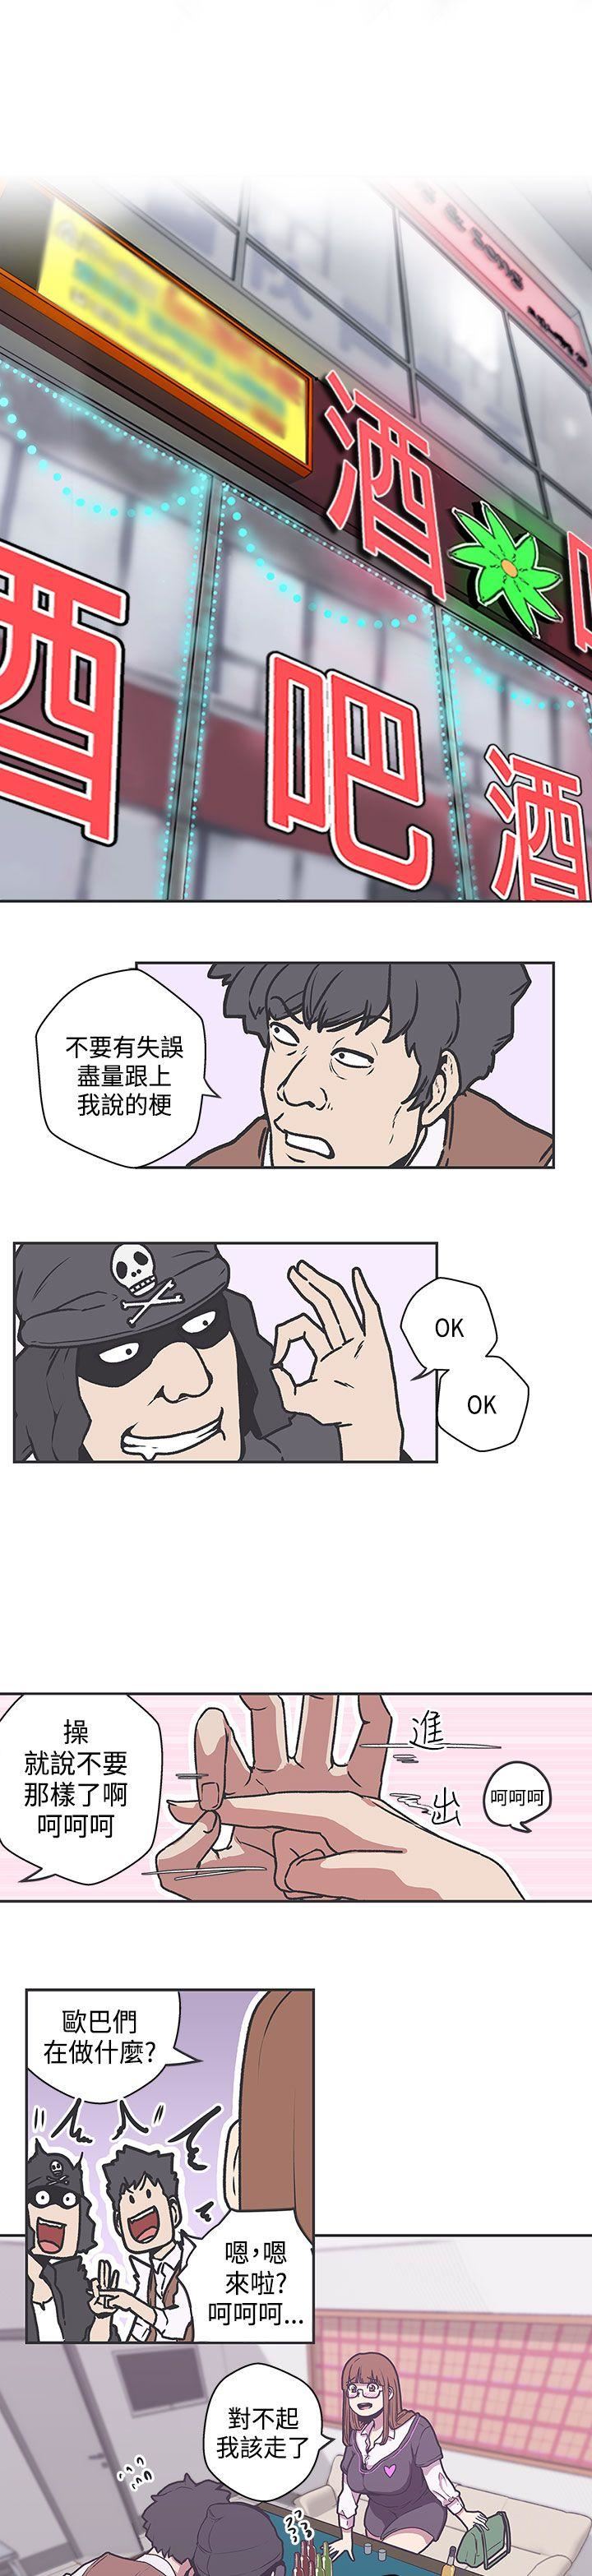 韩国污漫画 LOVE 愛的導航G 第38话 1